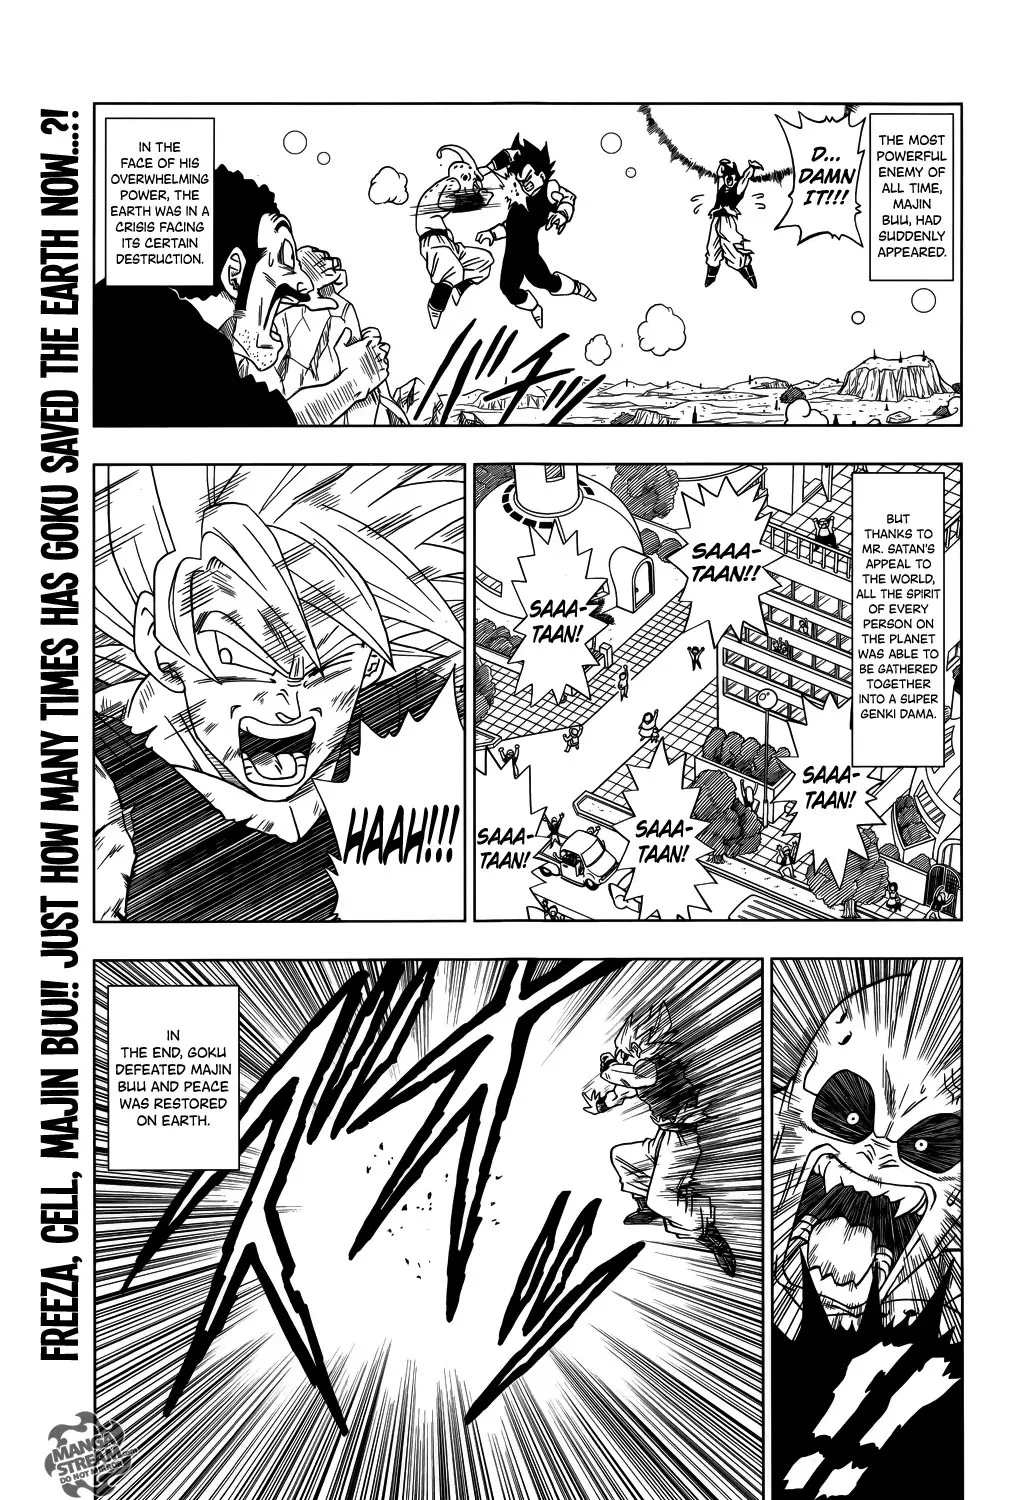 Dragon Ball Super - 1 page 003